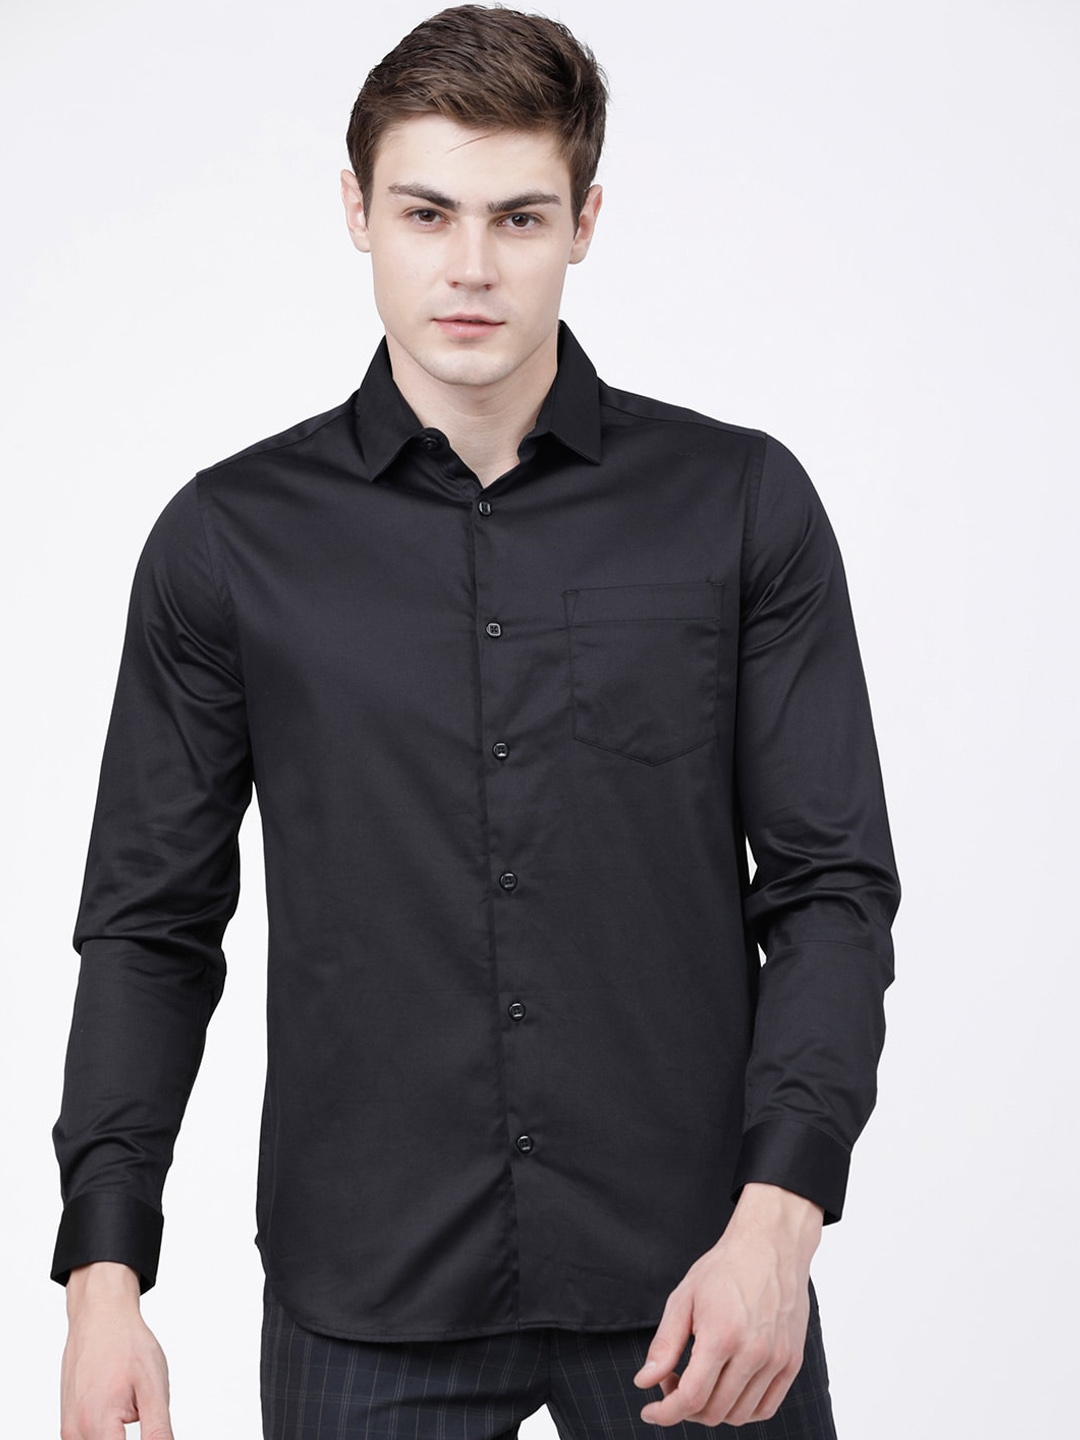 Buy HIGHLANDER Men Black Slim Fit Casual Shirt - Shirts for Men ...